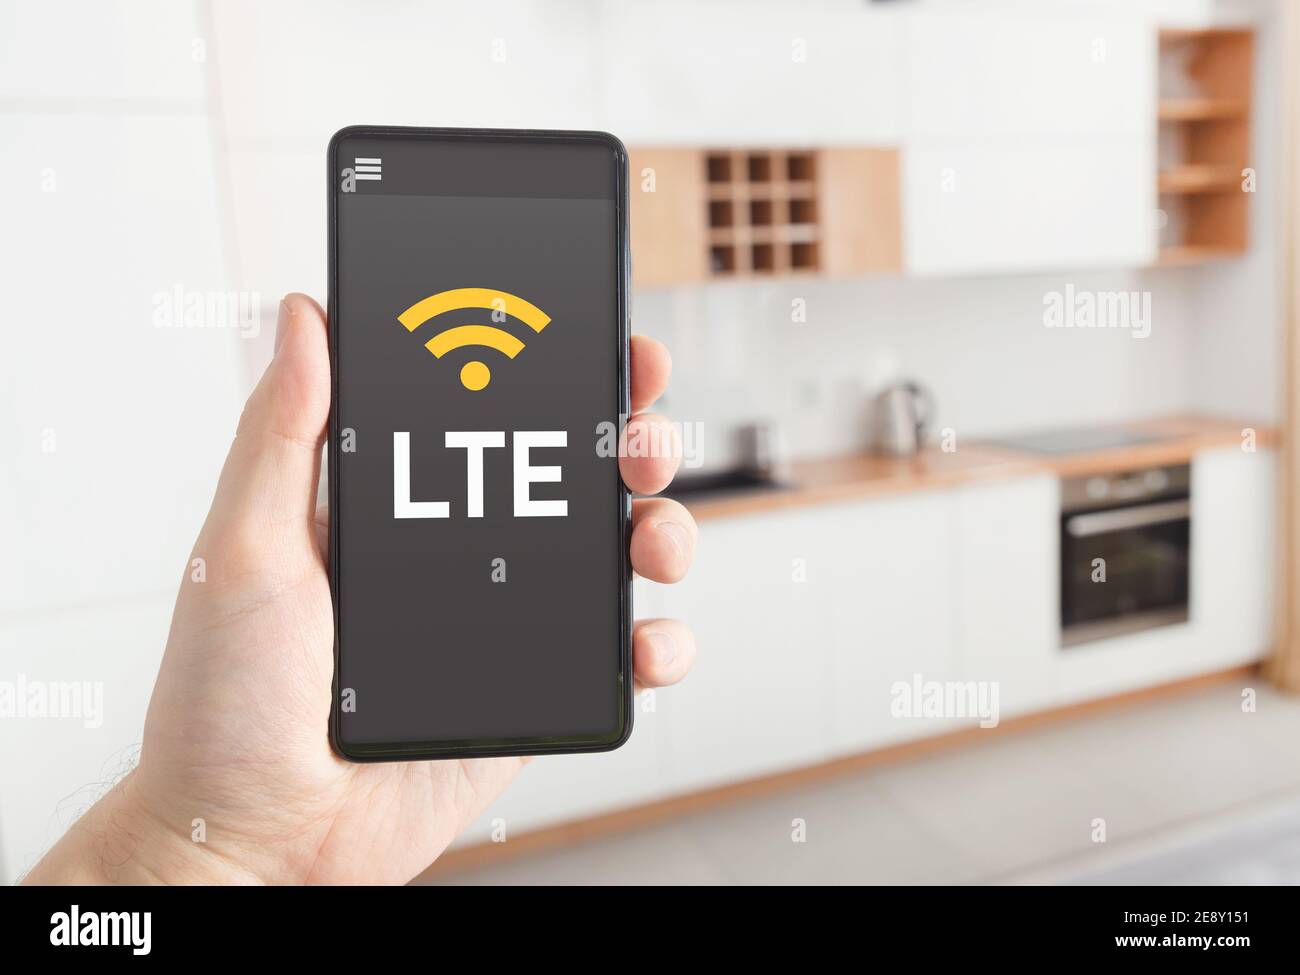 Connexion Internet LTE rapide. Homme tenant un smartphone avec le logo LTE à l'écran. Banque D'Images